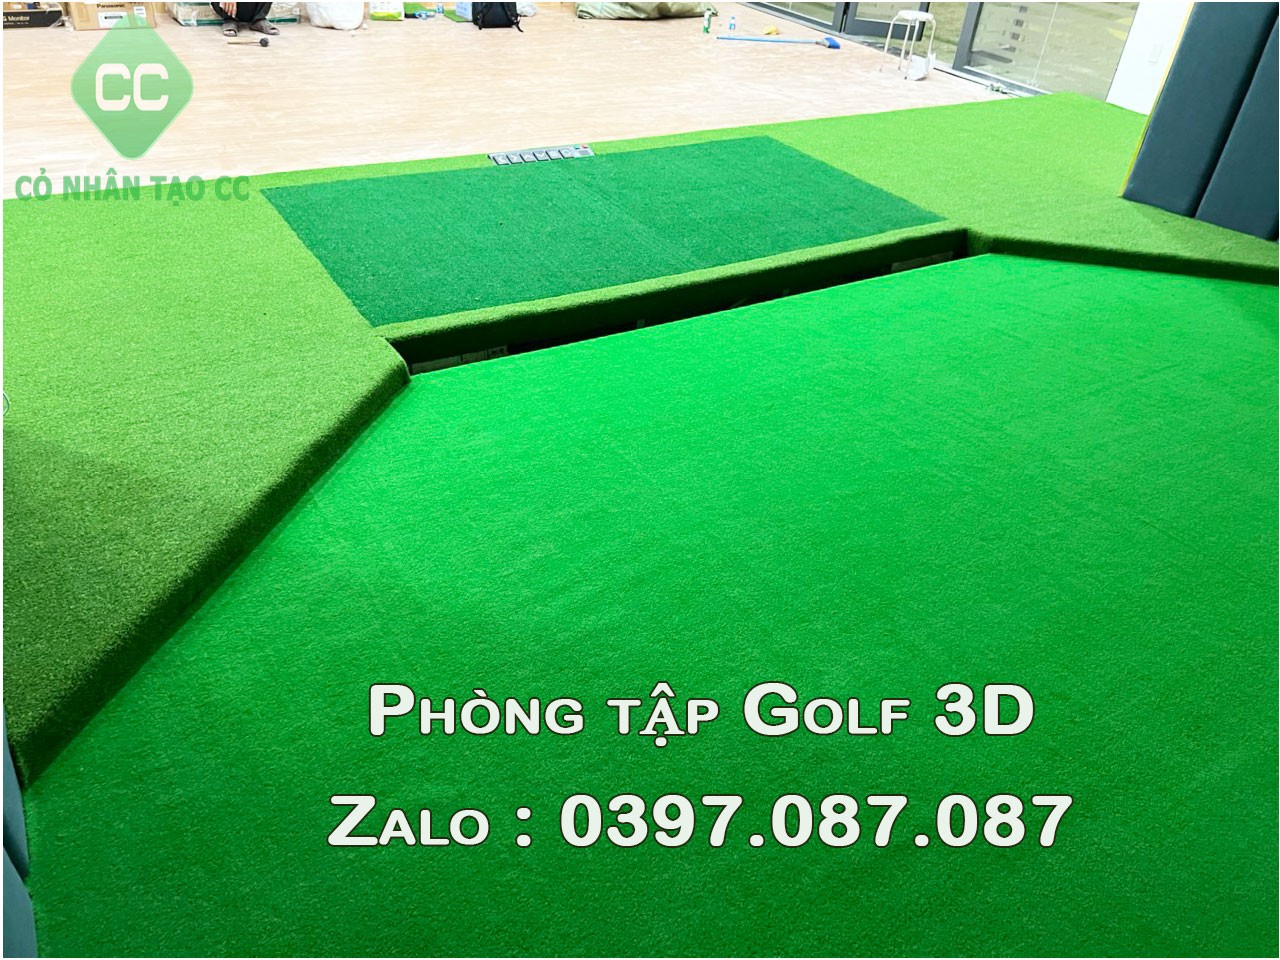 Phòng tập Golf 3D